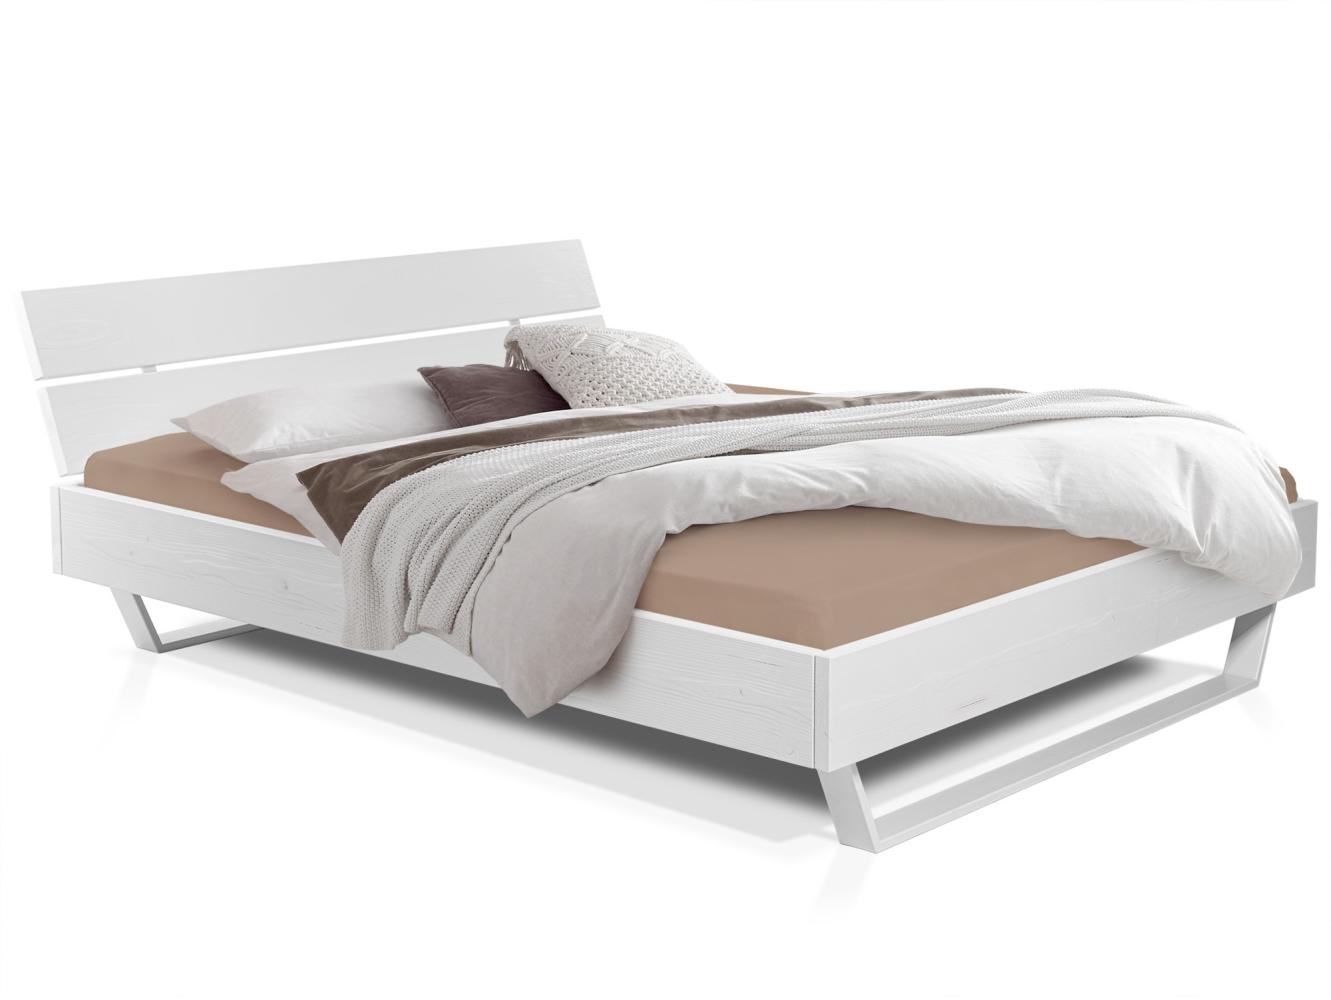 Möbel-Eins LUKY Kufenbett mit Kopfteil, Material Massivholz, Fichte massiv, Kufen weiß weiss 160 x 220 cm Bild 1